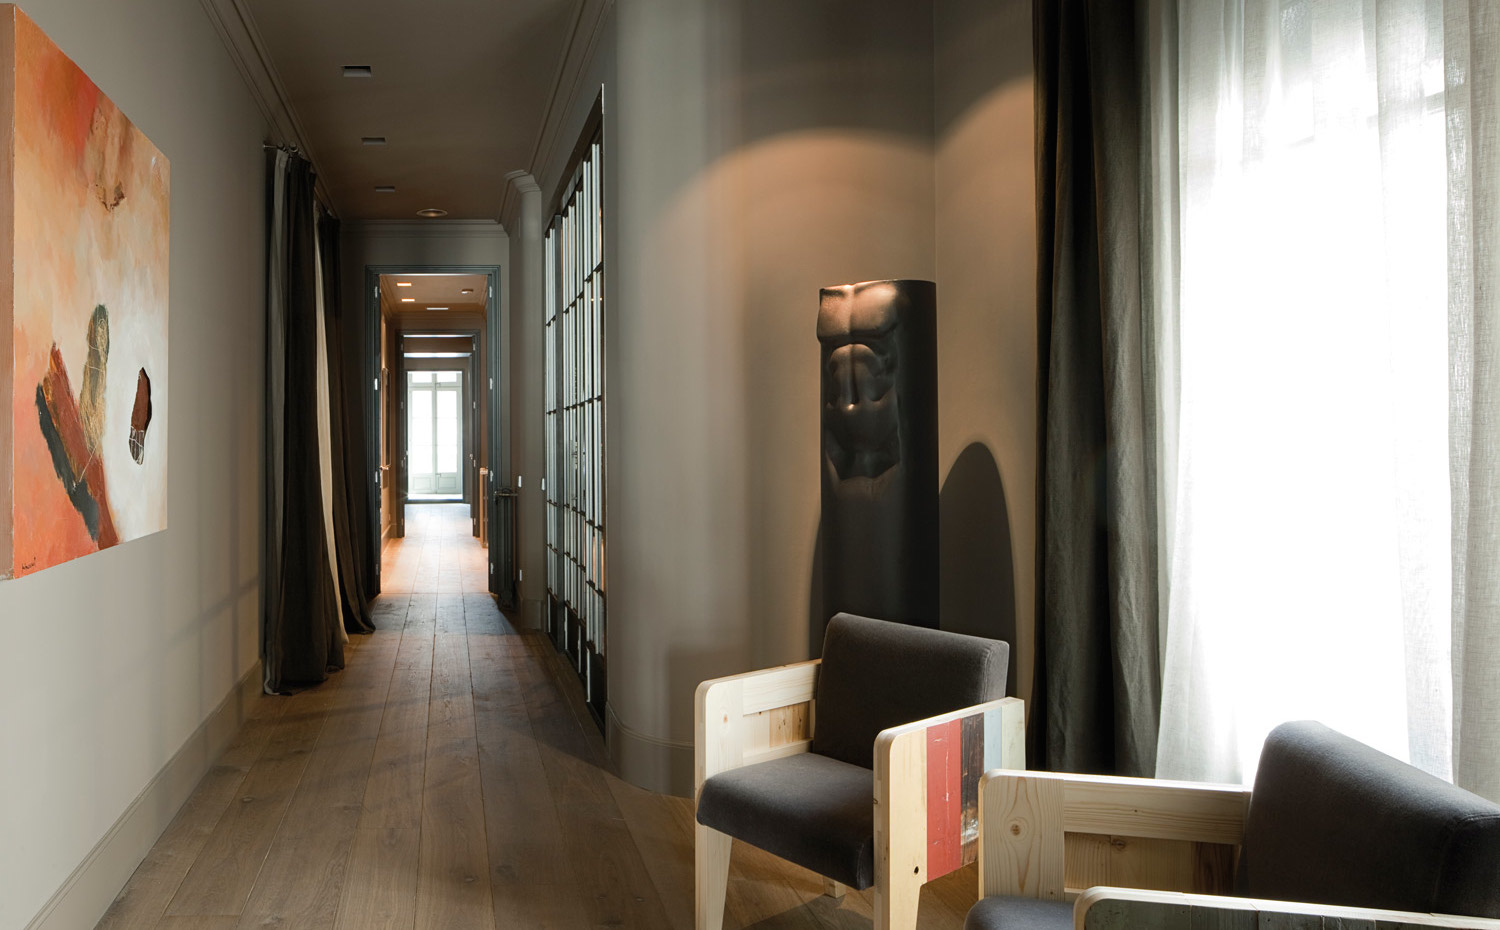 00368864 O. La vivienda presenta la típica distribución alargada de los pisos del Eixample barcelonés. El suelo es de tablas de madera. Las sillas son un diseño de Piet Hein Eek. Escultura de Xavier Medina Campeny